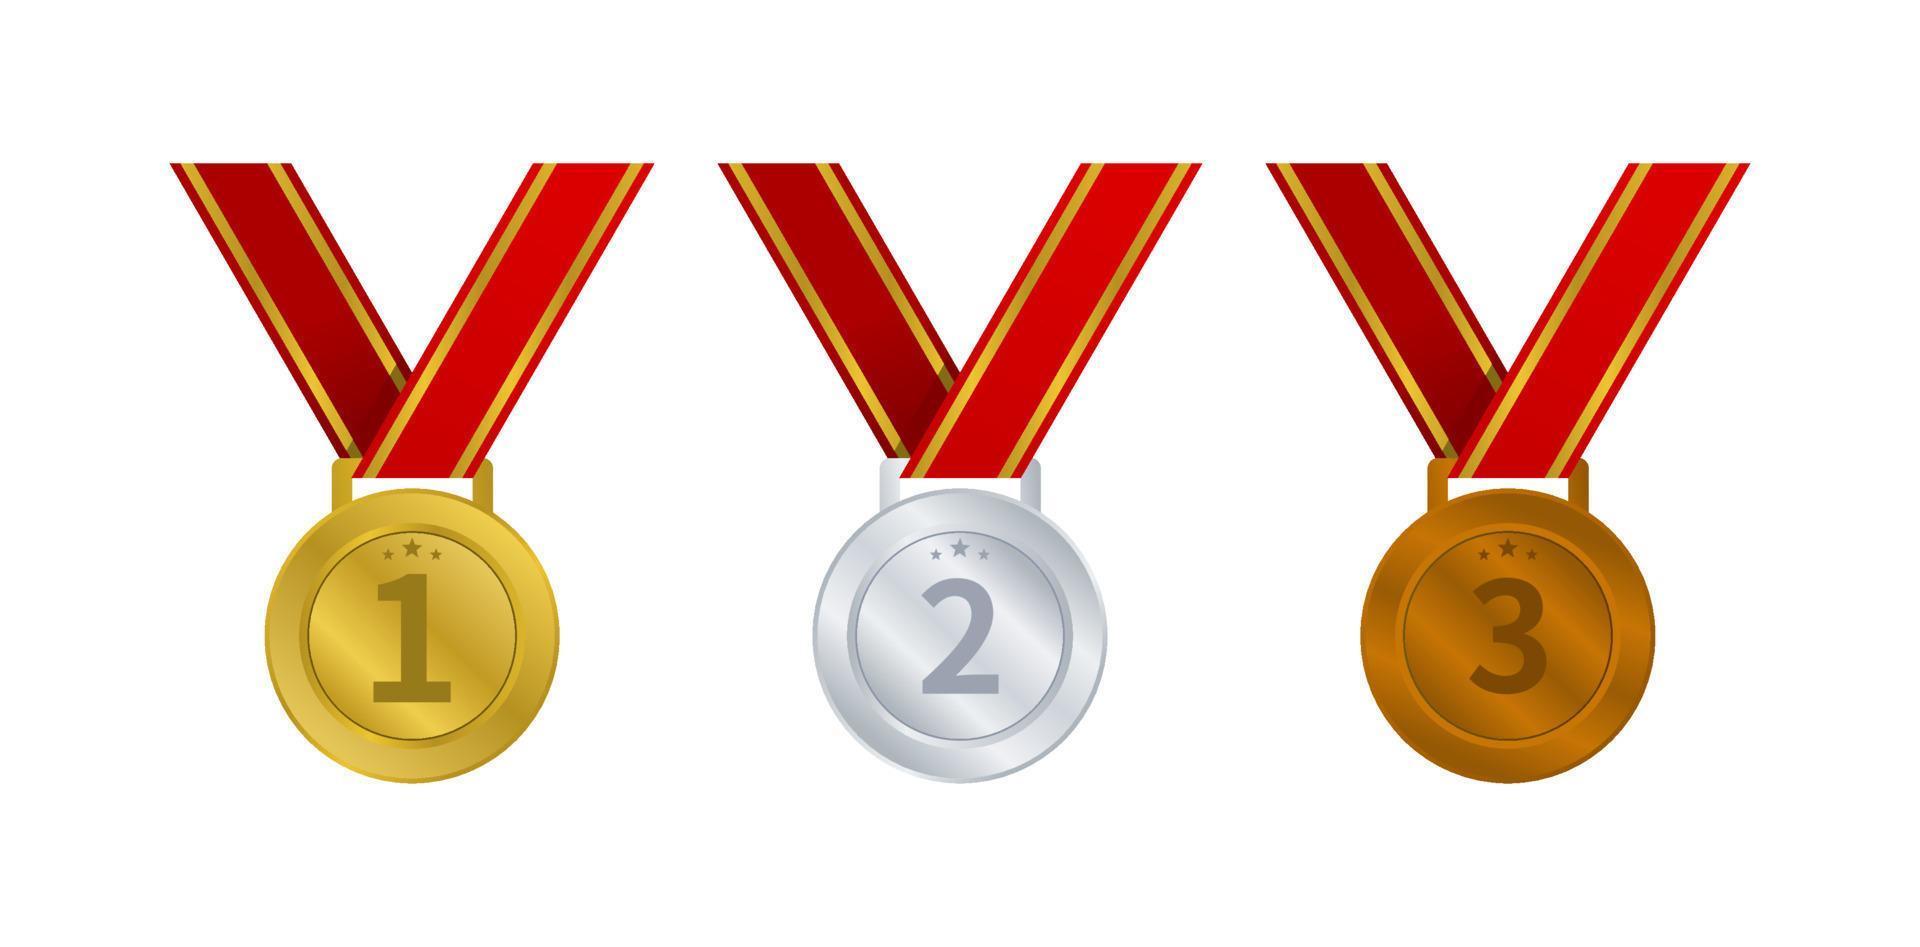 oro, d'argento, e bronzo medaglie con rosso nastro, medaglia per vittoria premio, campionato vettore